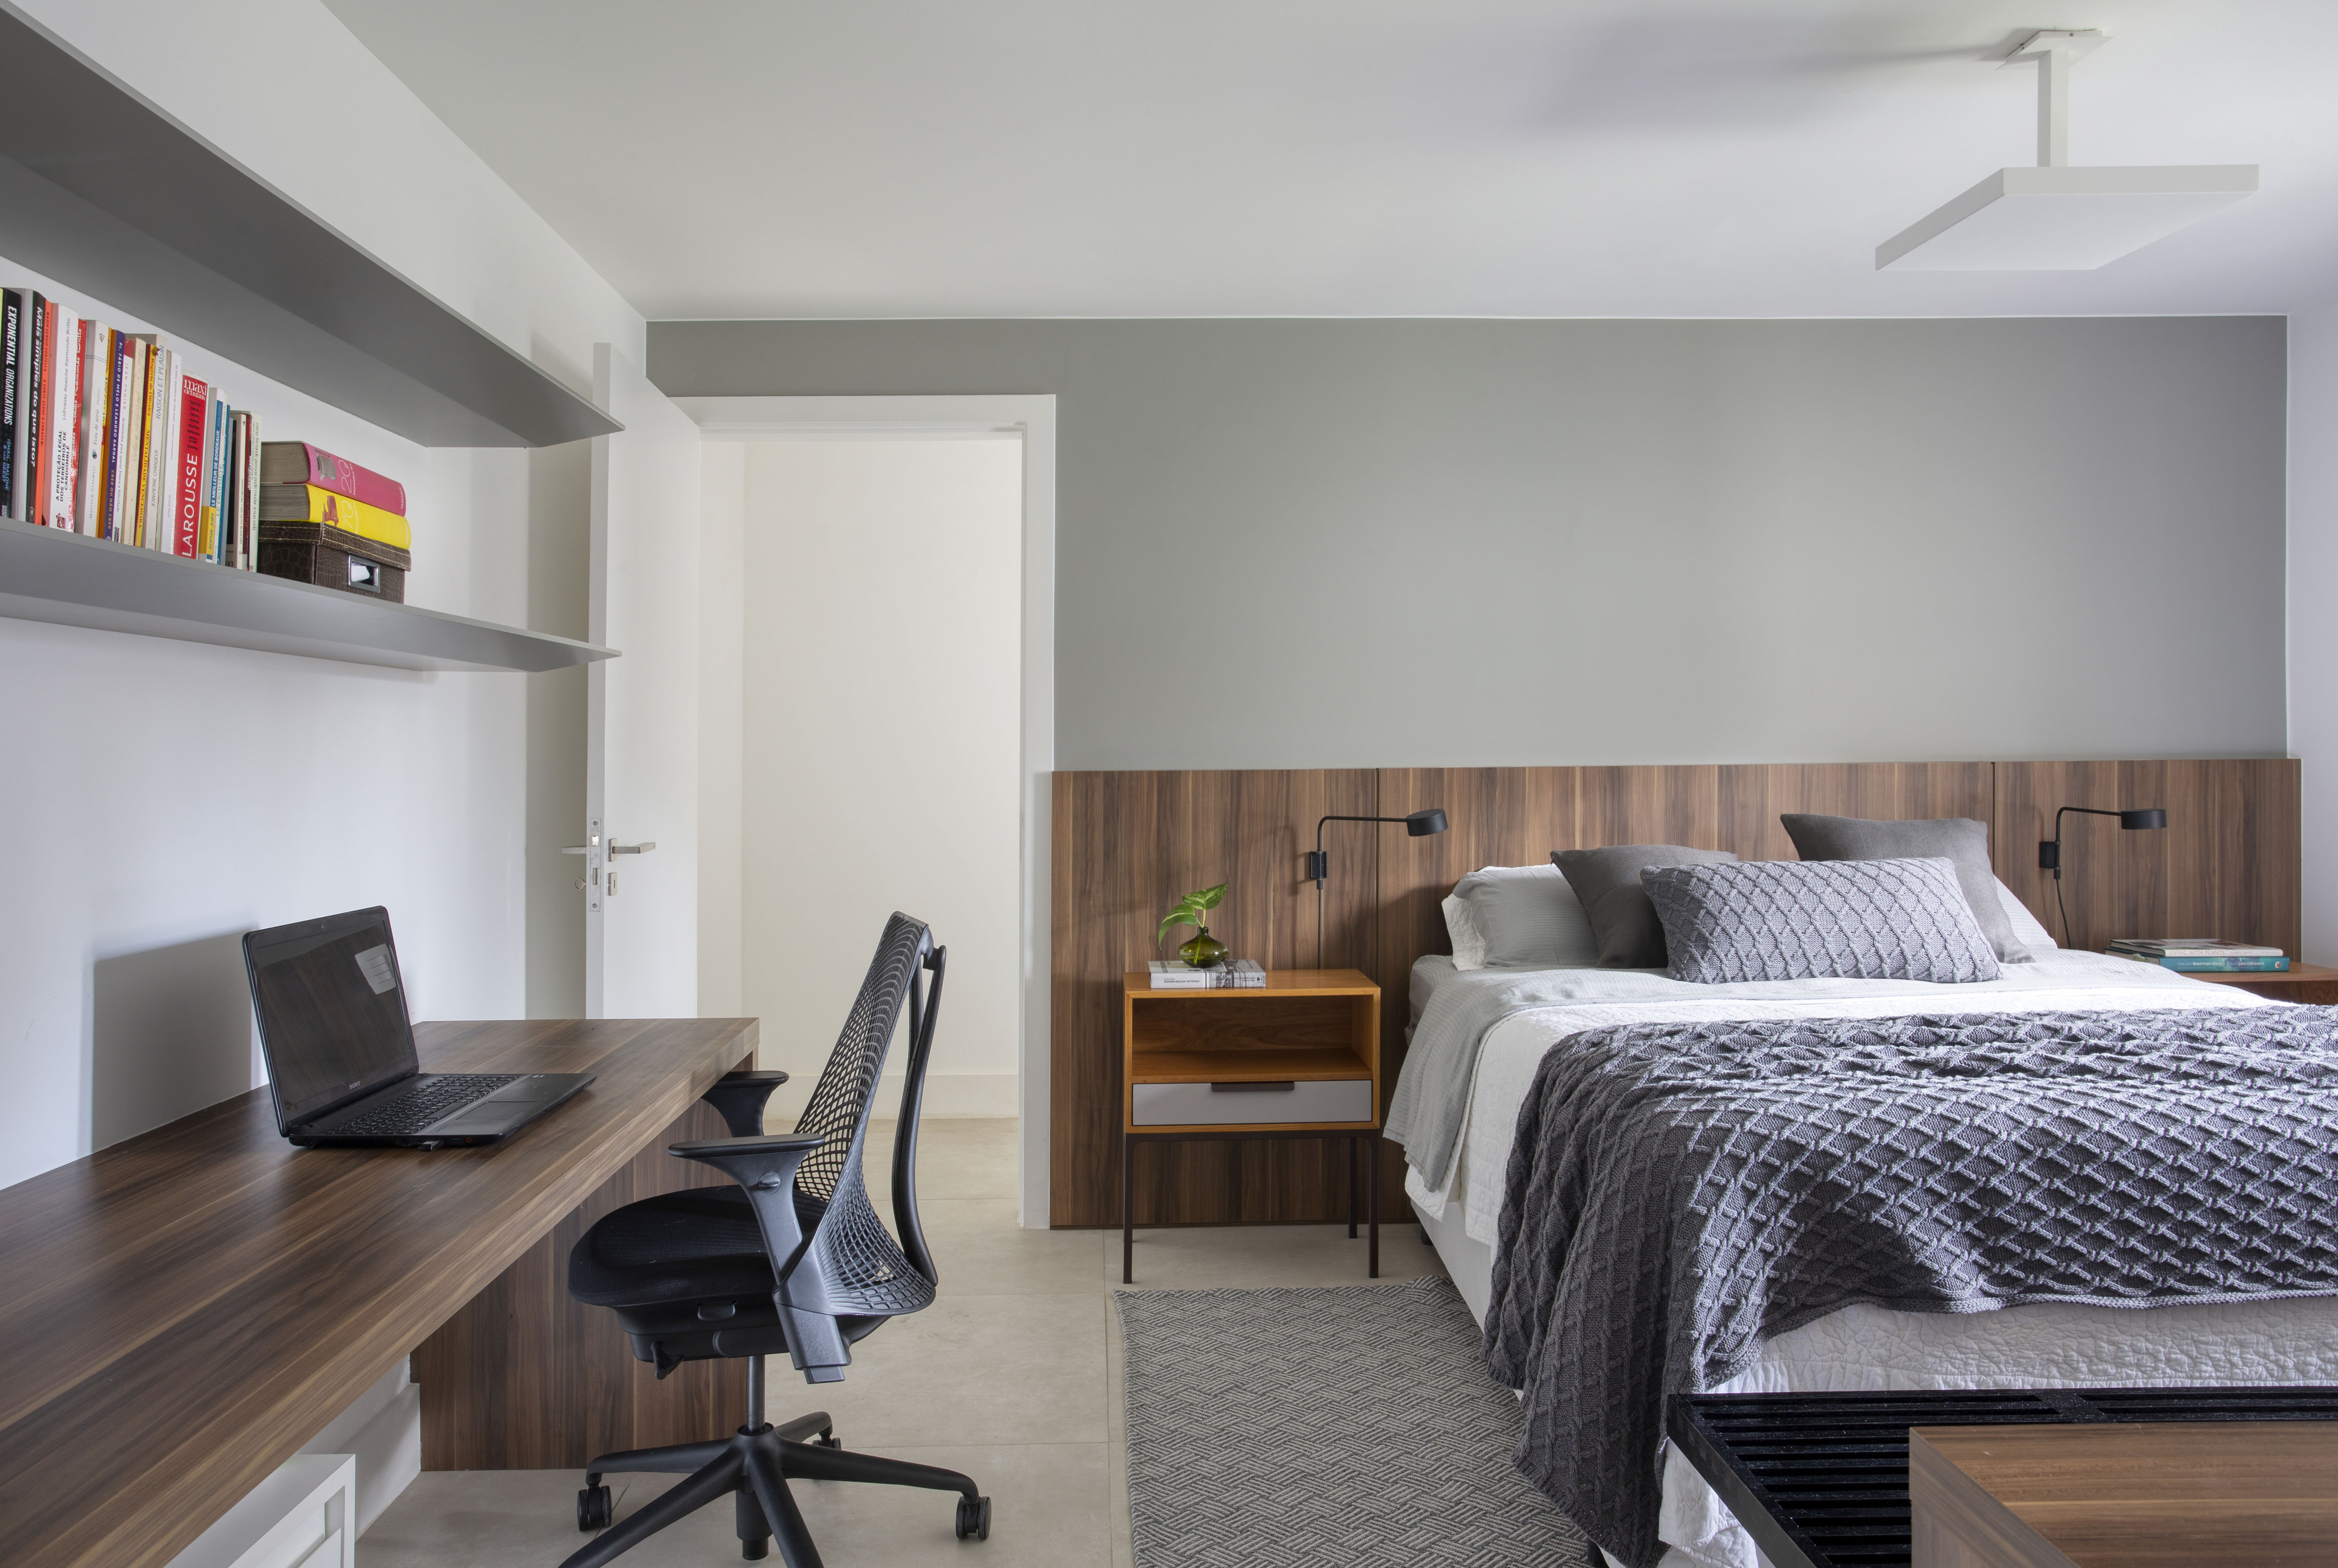 Projeto de Studio Duas Arquitetura. Na foto, quarto com cama de casal, cabeceira de madeira e home office.